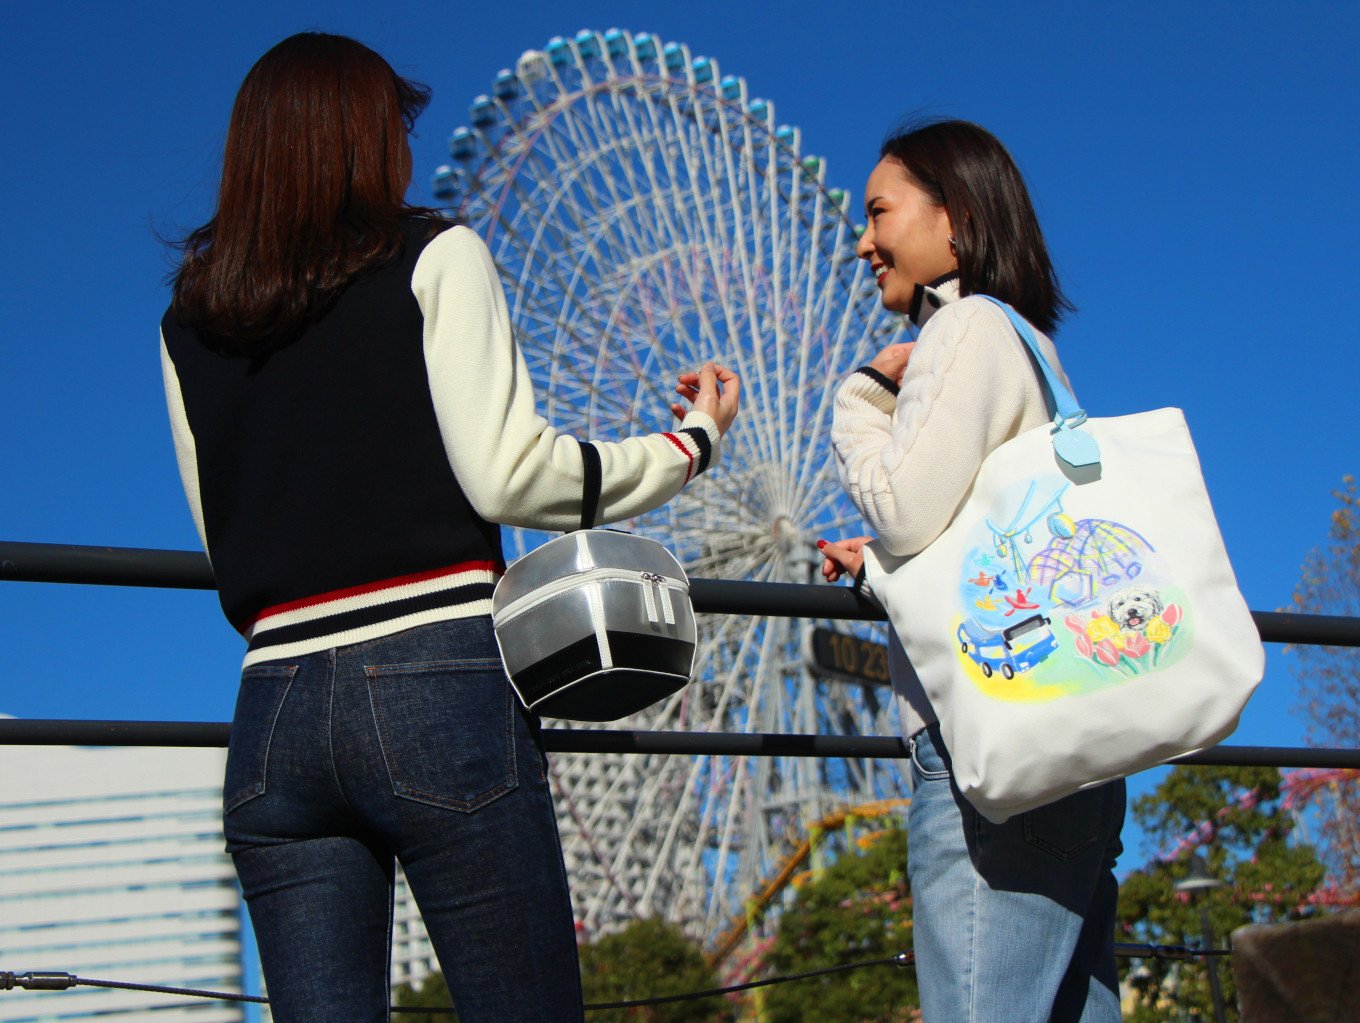 Find Your Yokohama 横浜市 キタムラ オリジナルバッグとめぐる 進化しつづける街 横浜 ふるさと納税 ふるさとチョイス